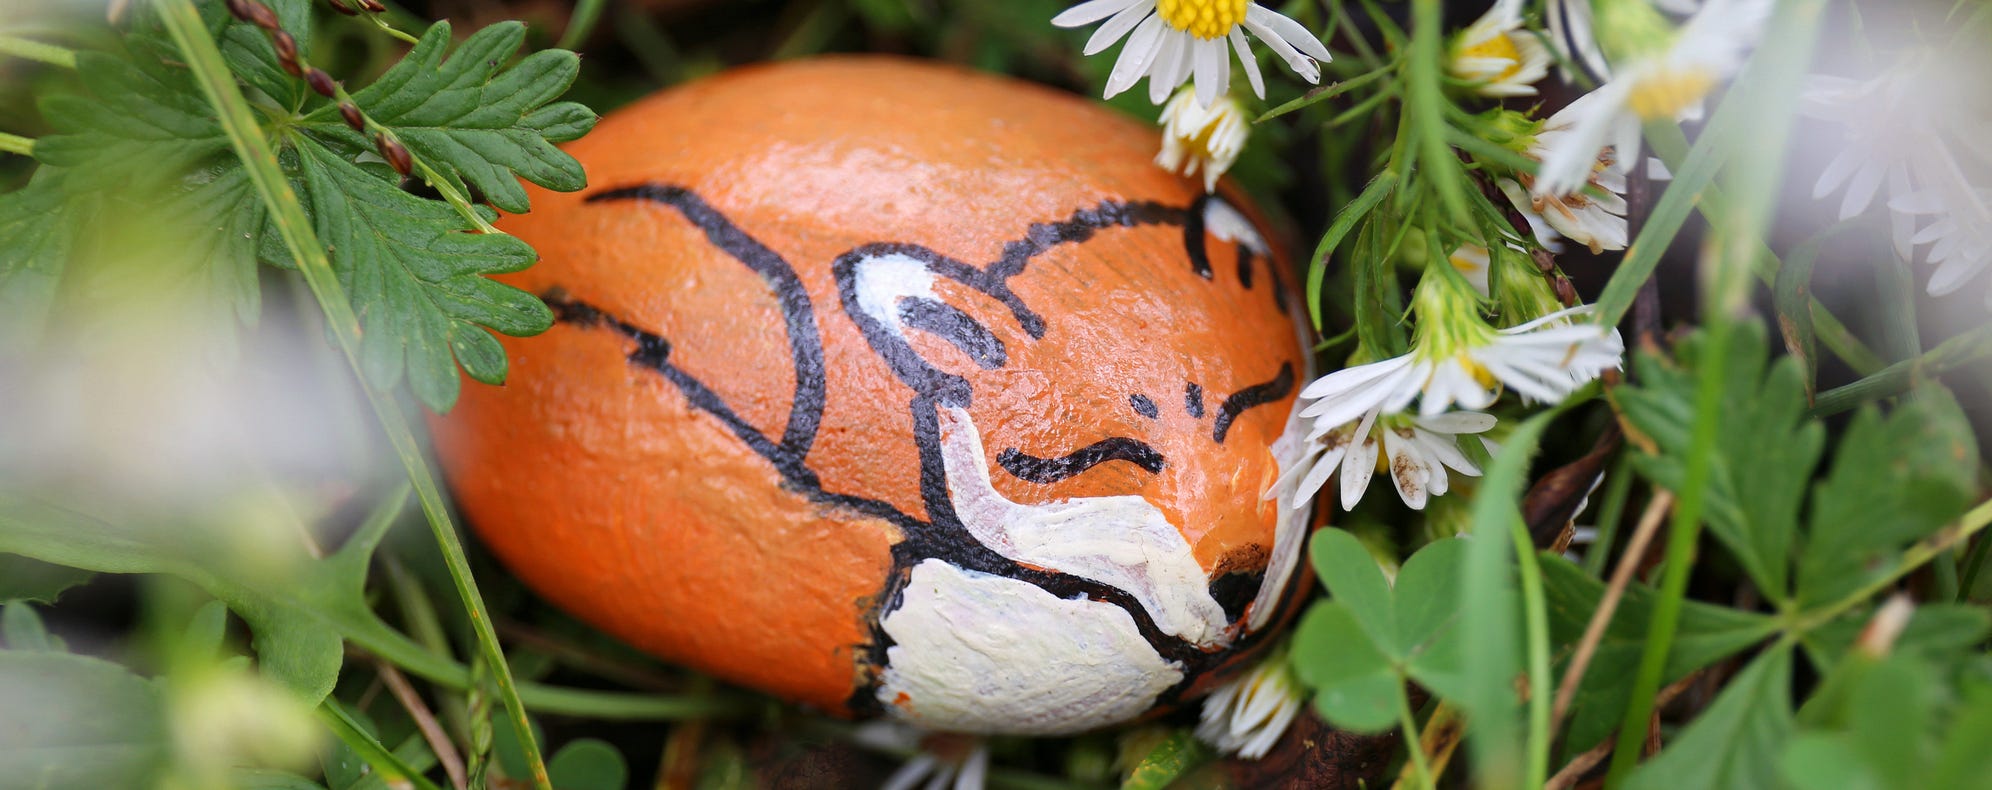 rock painted as sleeping fox in wildflowers